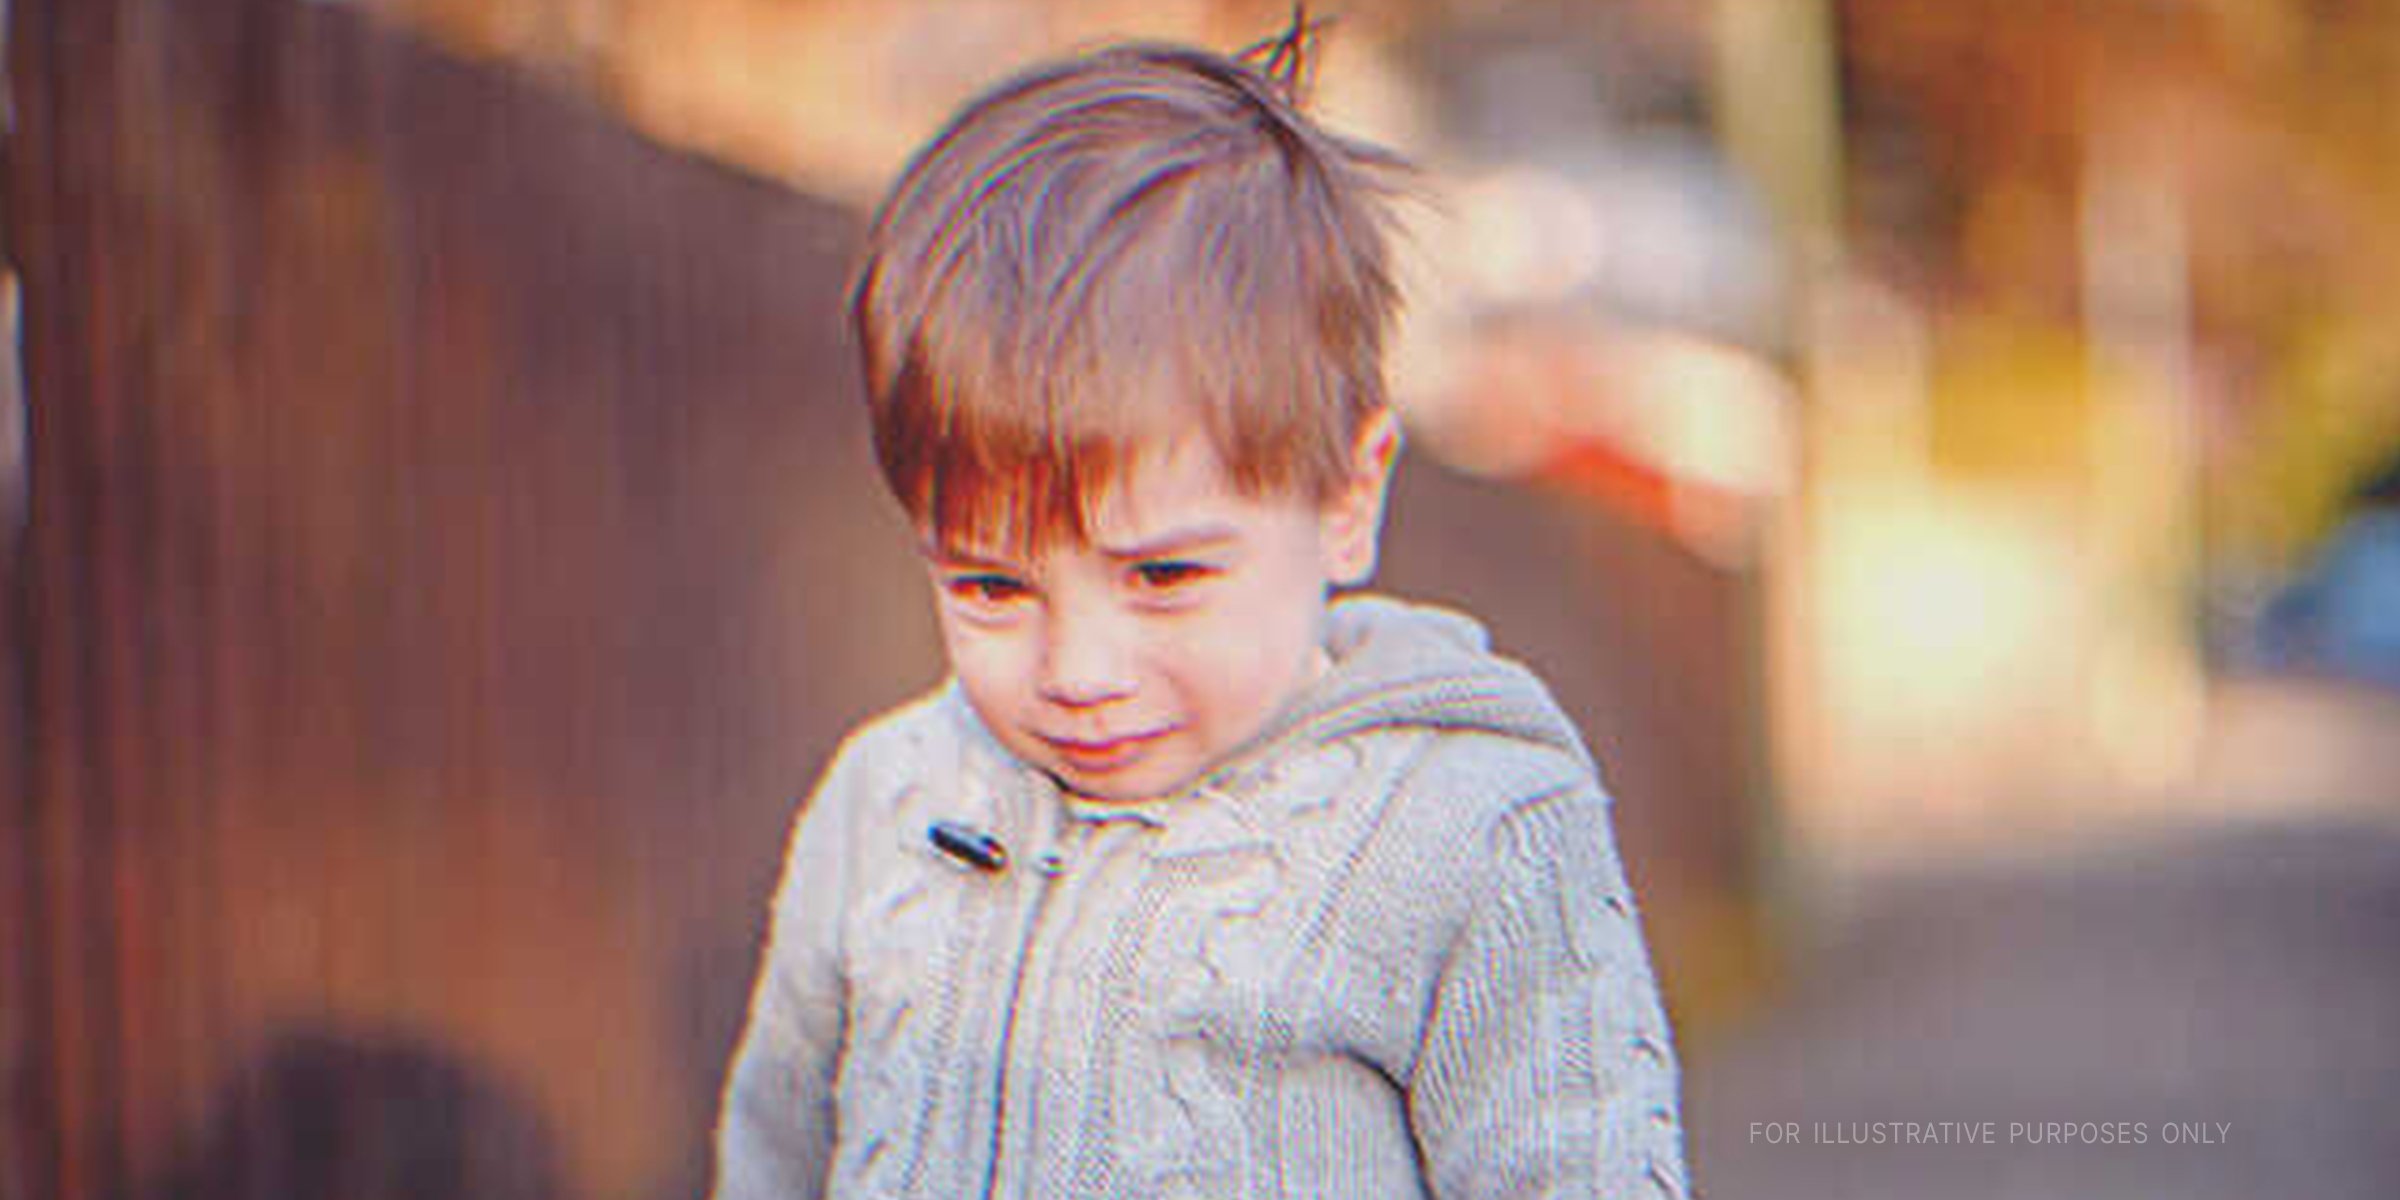 Little Boy Begs In Tears. | Source: Shutterstock